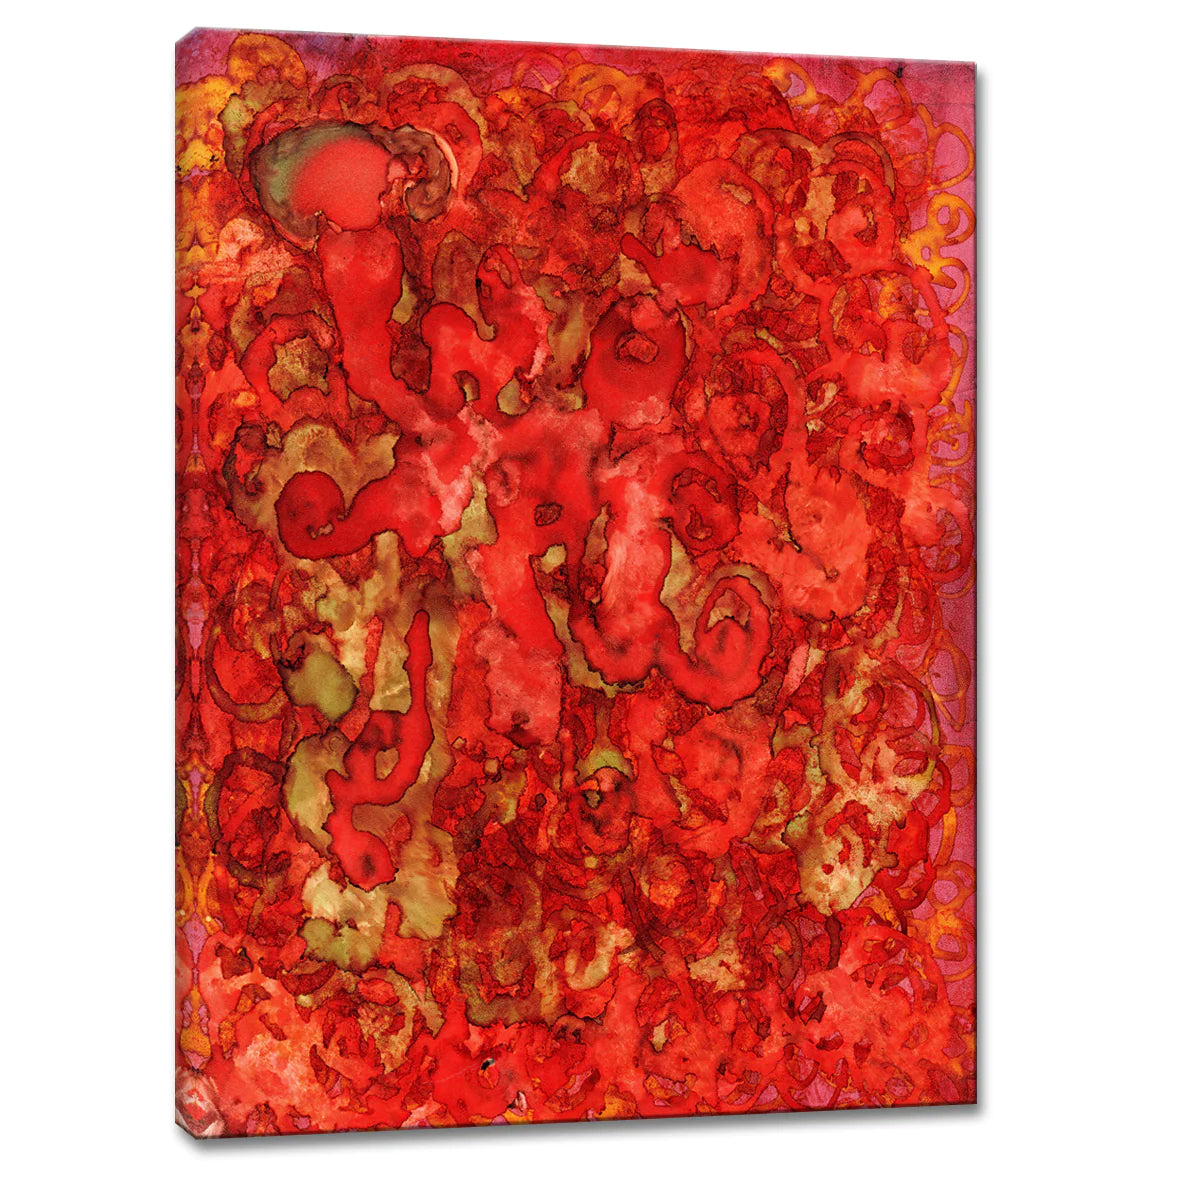 Firebird, Wrapped Canvas Wall Art, 16"